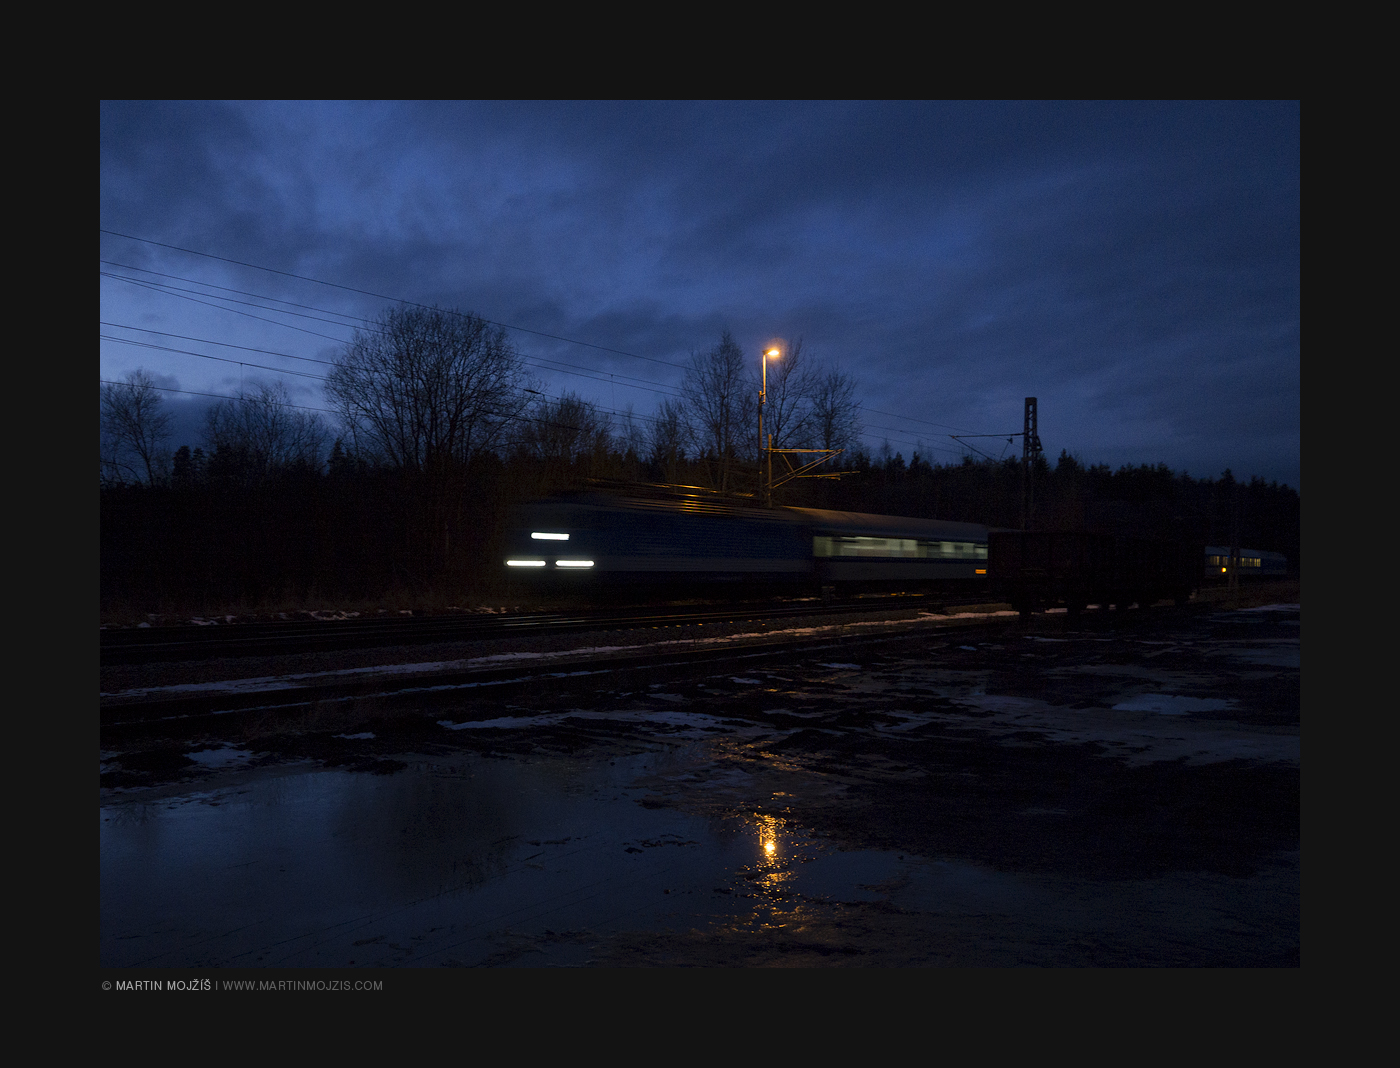 Passenger train in the dusk.